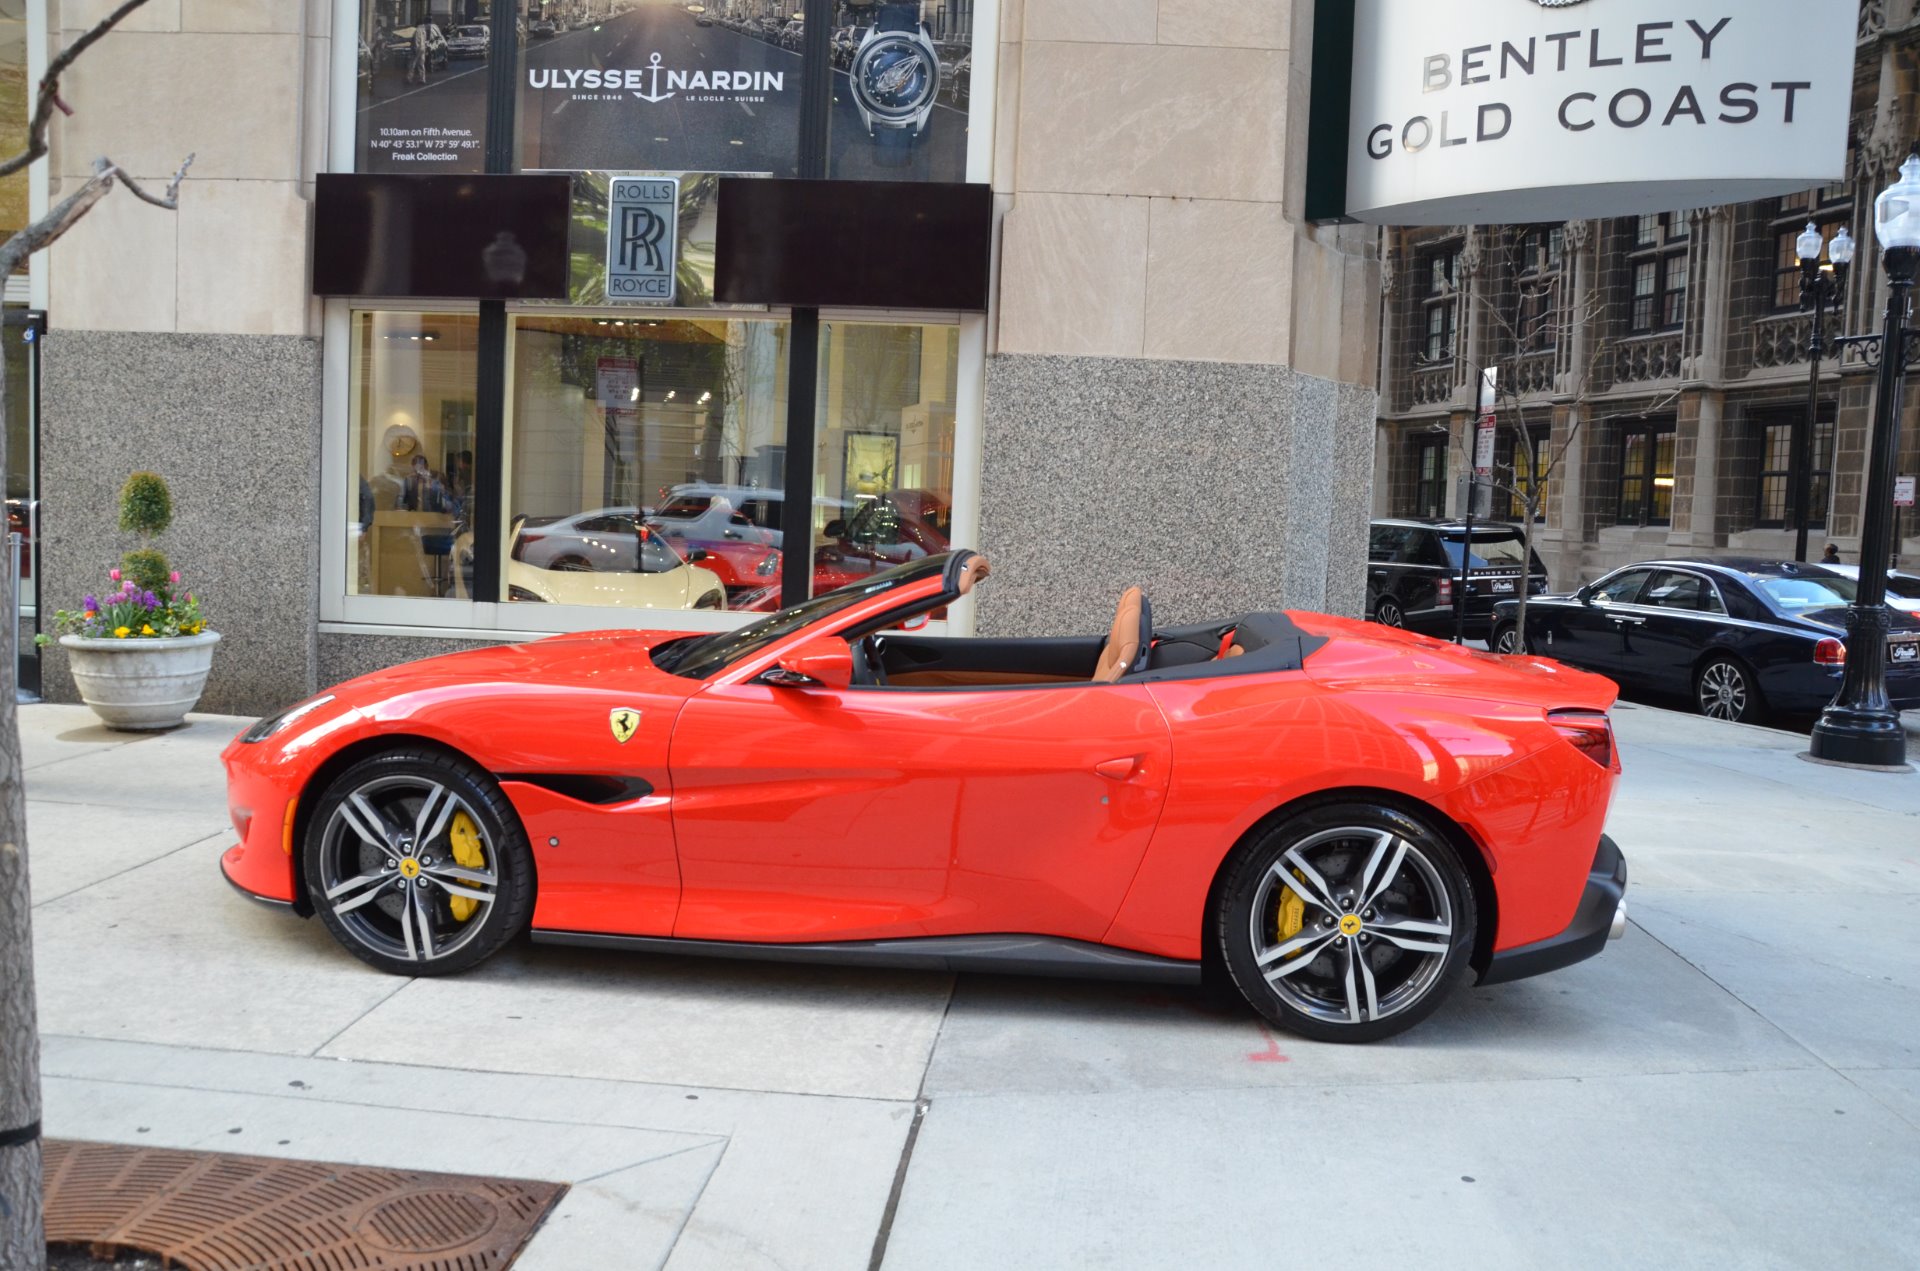 2019 Ferrari Portofino Stock L601a For Sale Near Chicago